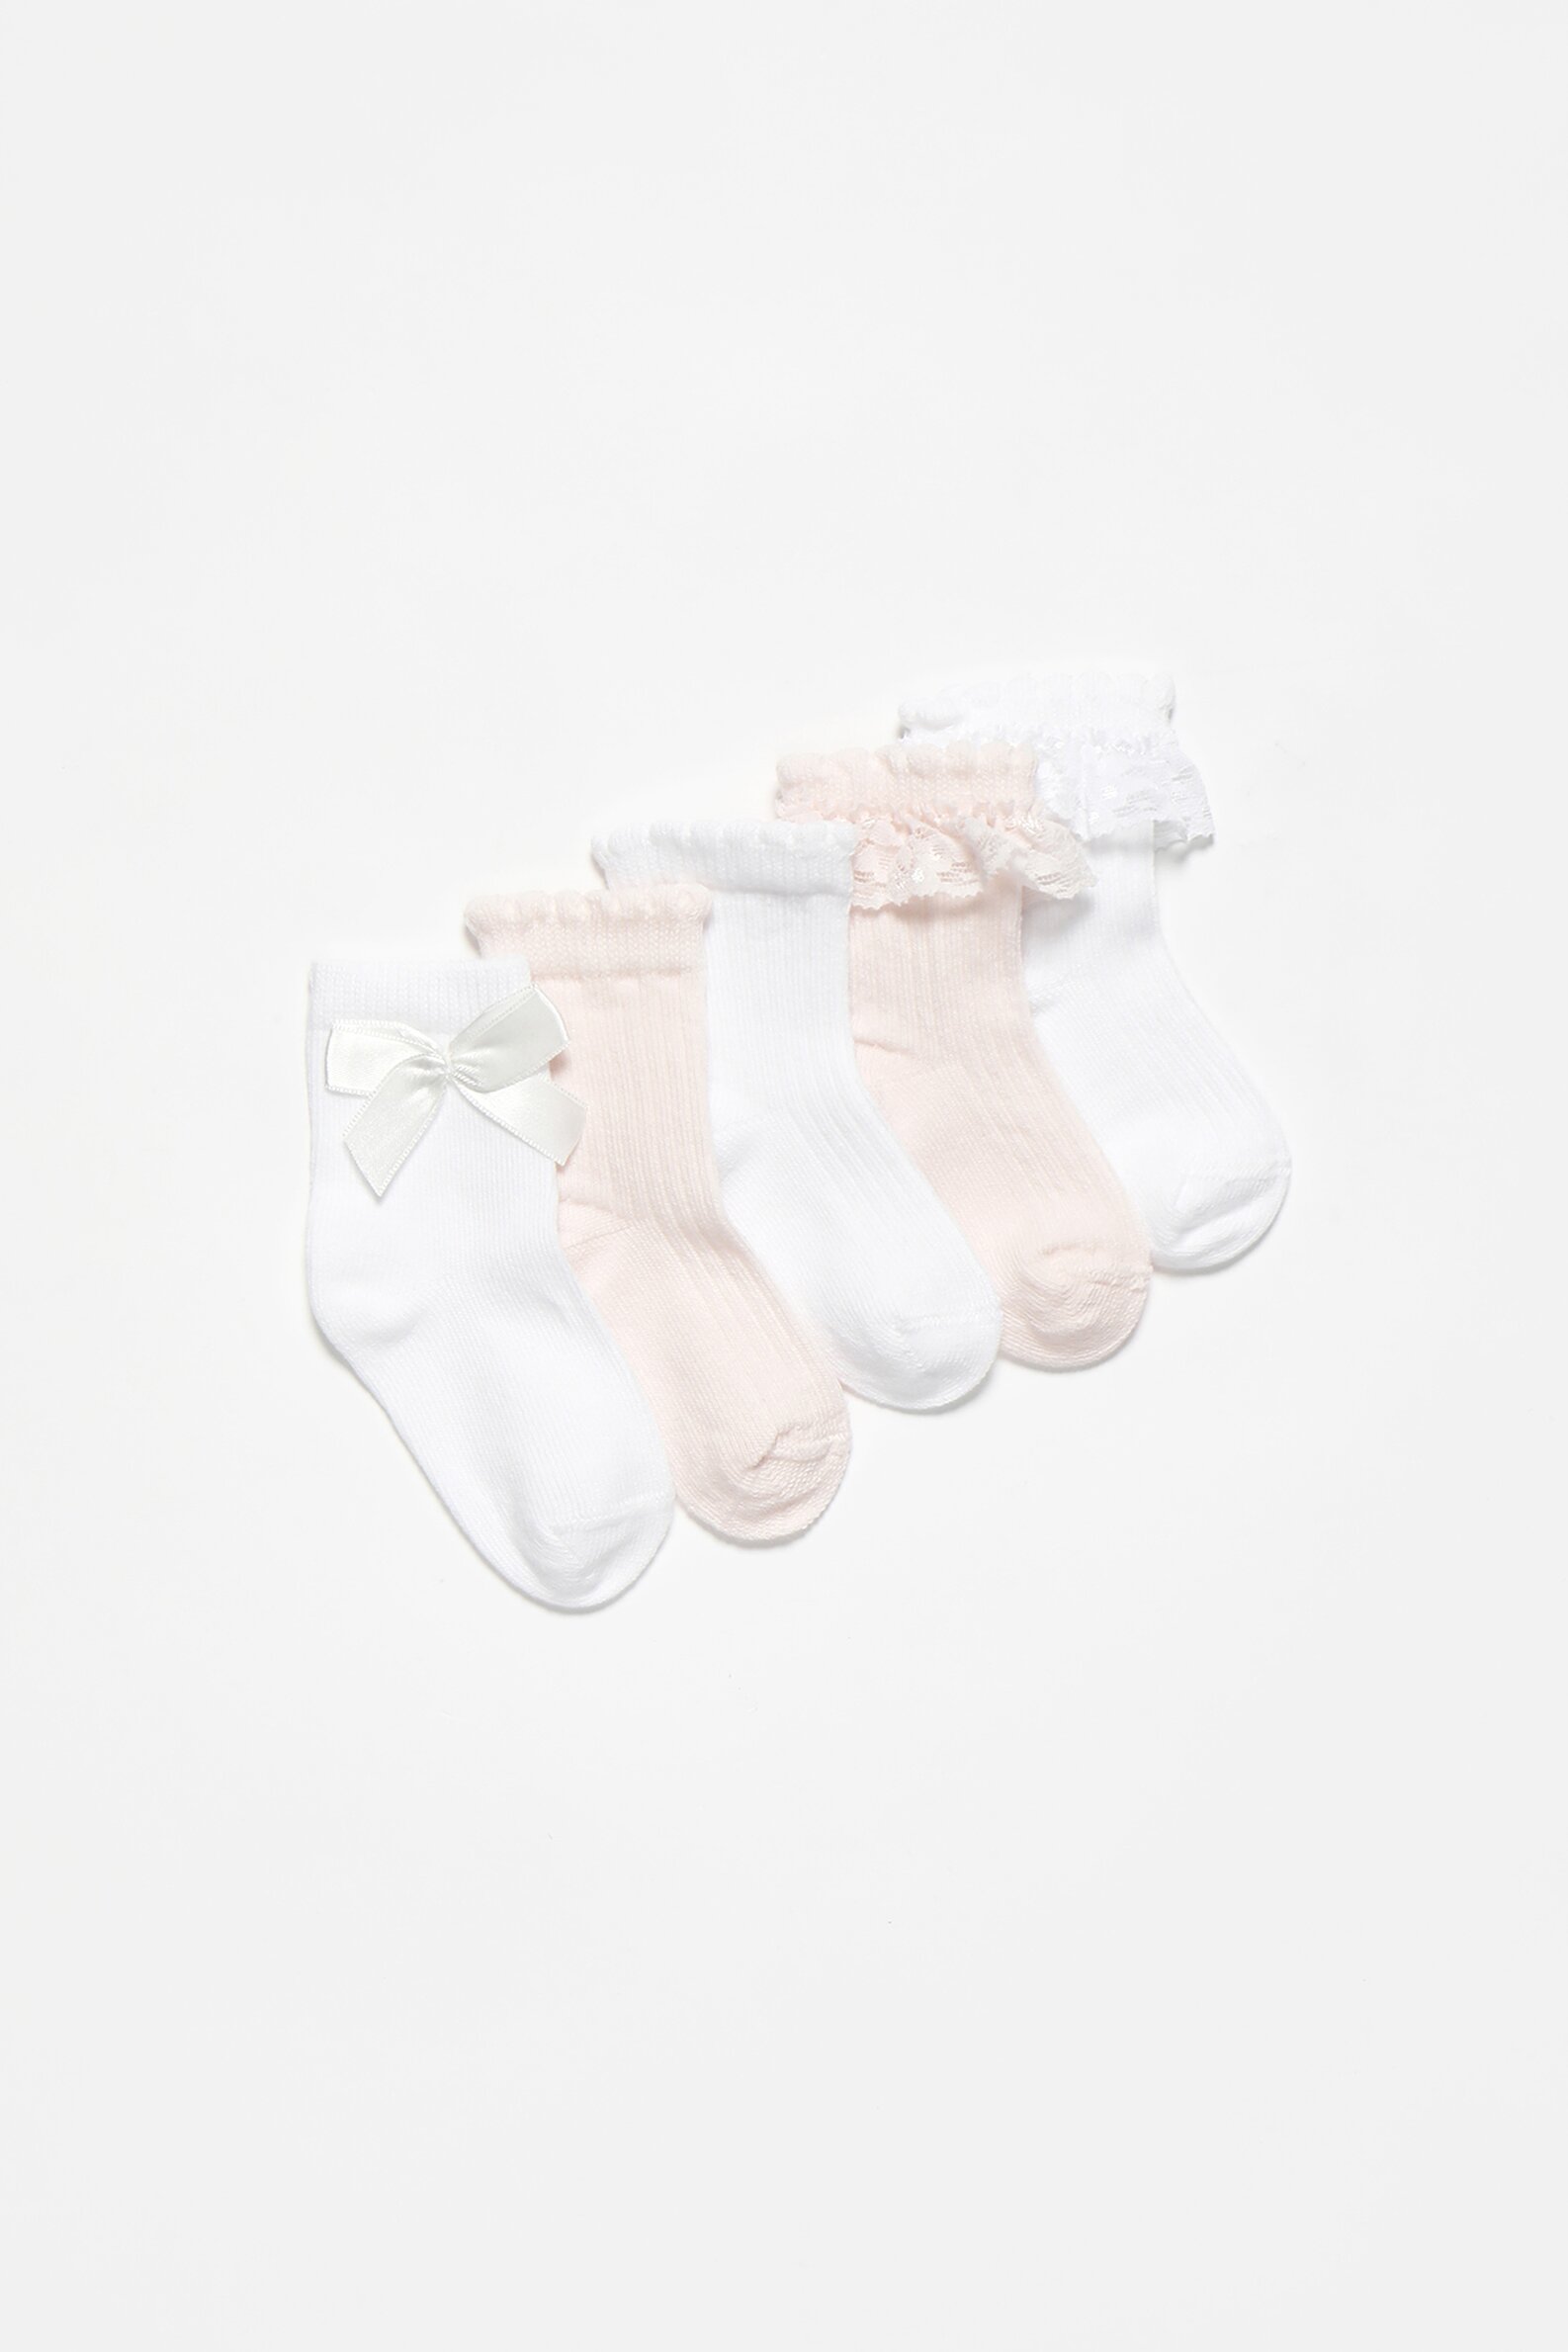 5-pack of lace socks - Socks - UNDERWEAR | PYJAMAS - Baby Girl - Kids - |  Lefties Andorra